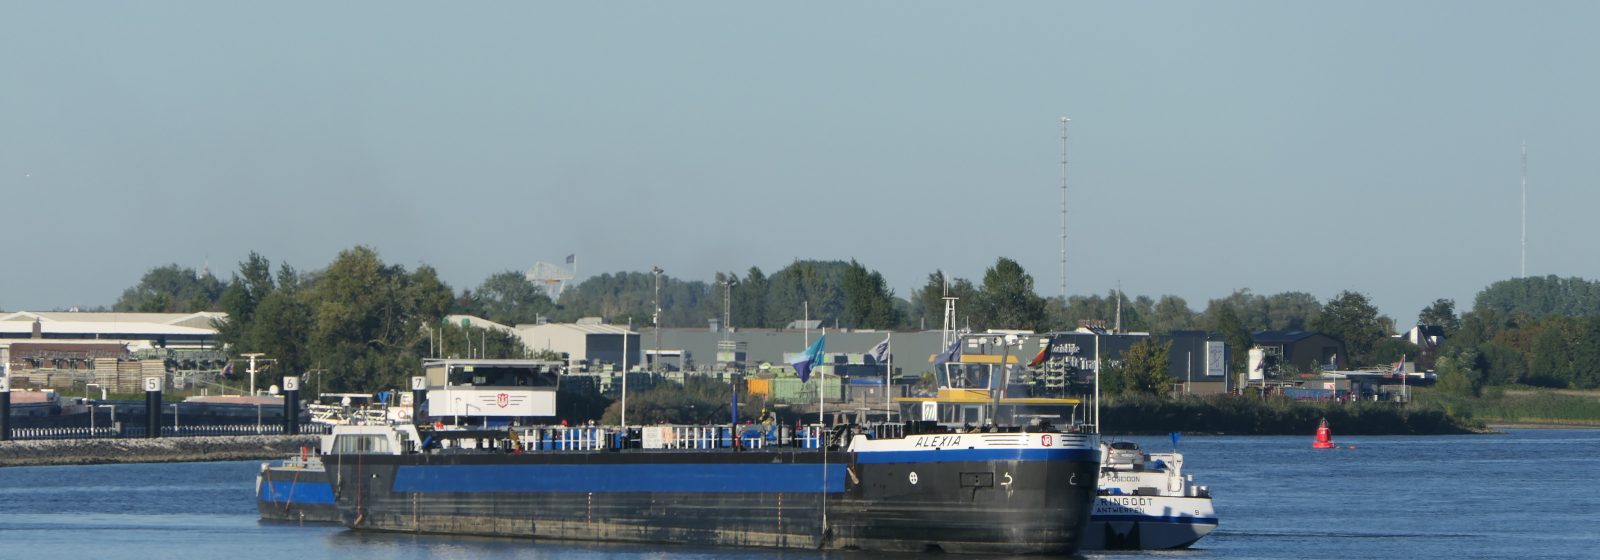 Binnenvaarttanker 'Alexia' langszij de 'Poseidon'